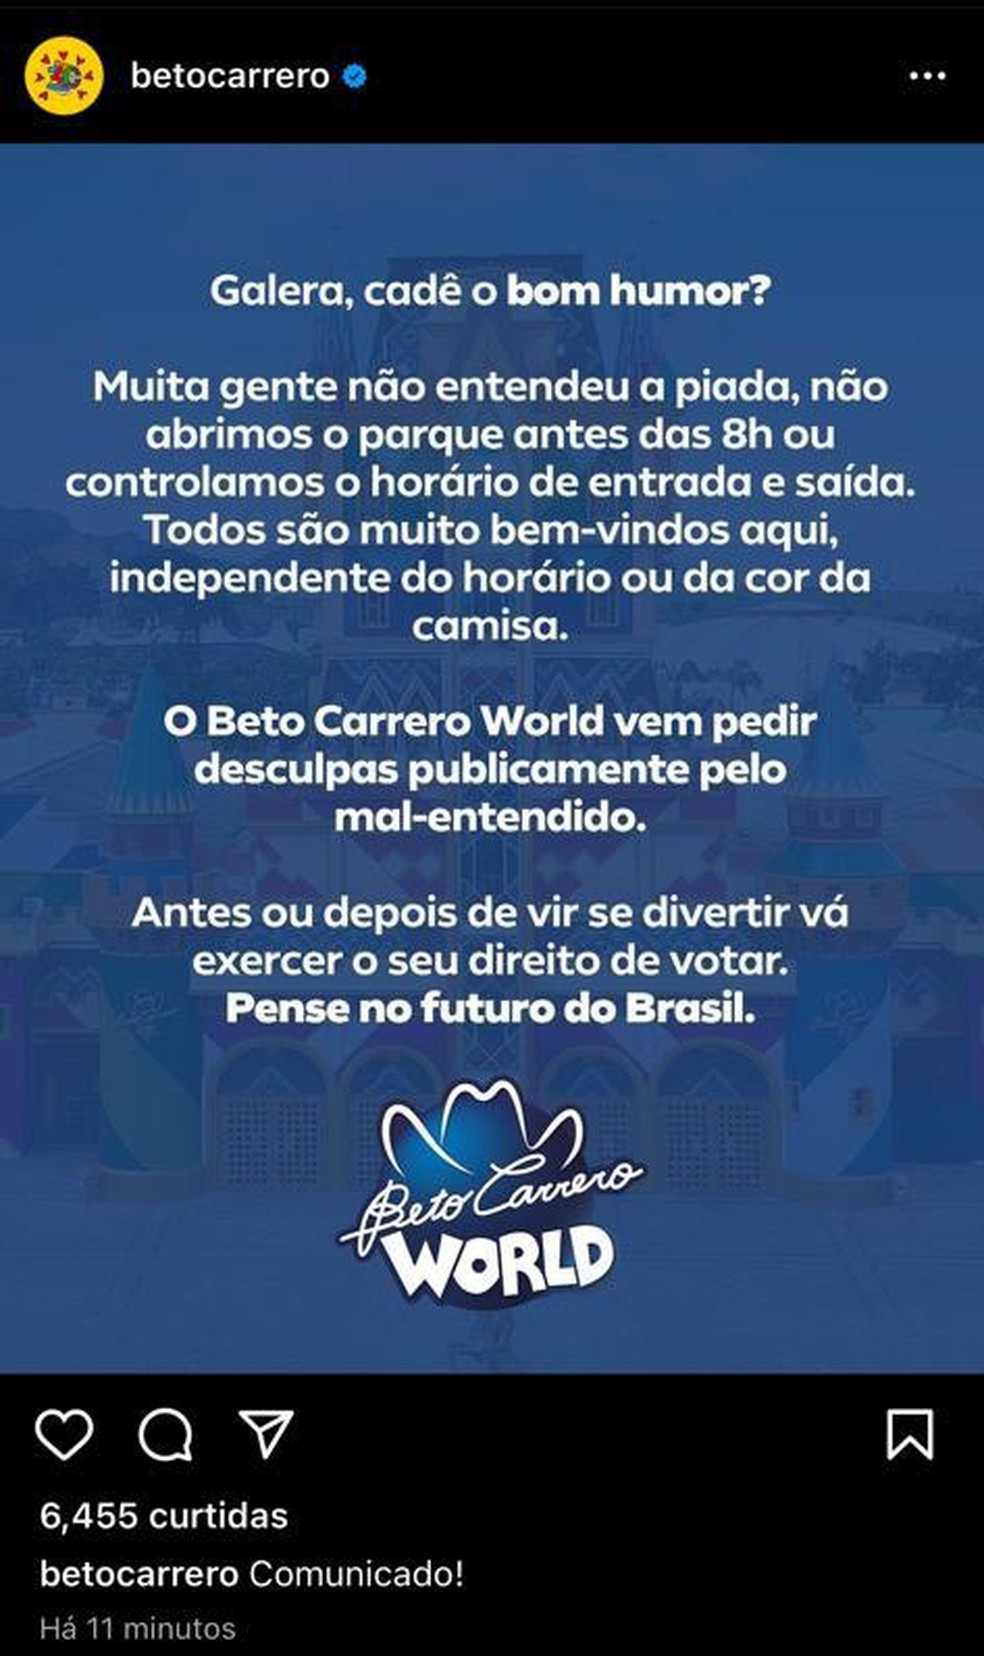 Beto Carrero World: o mundo da diversão - Falando de Viagem